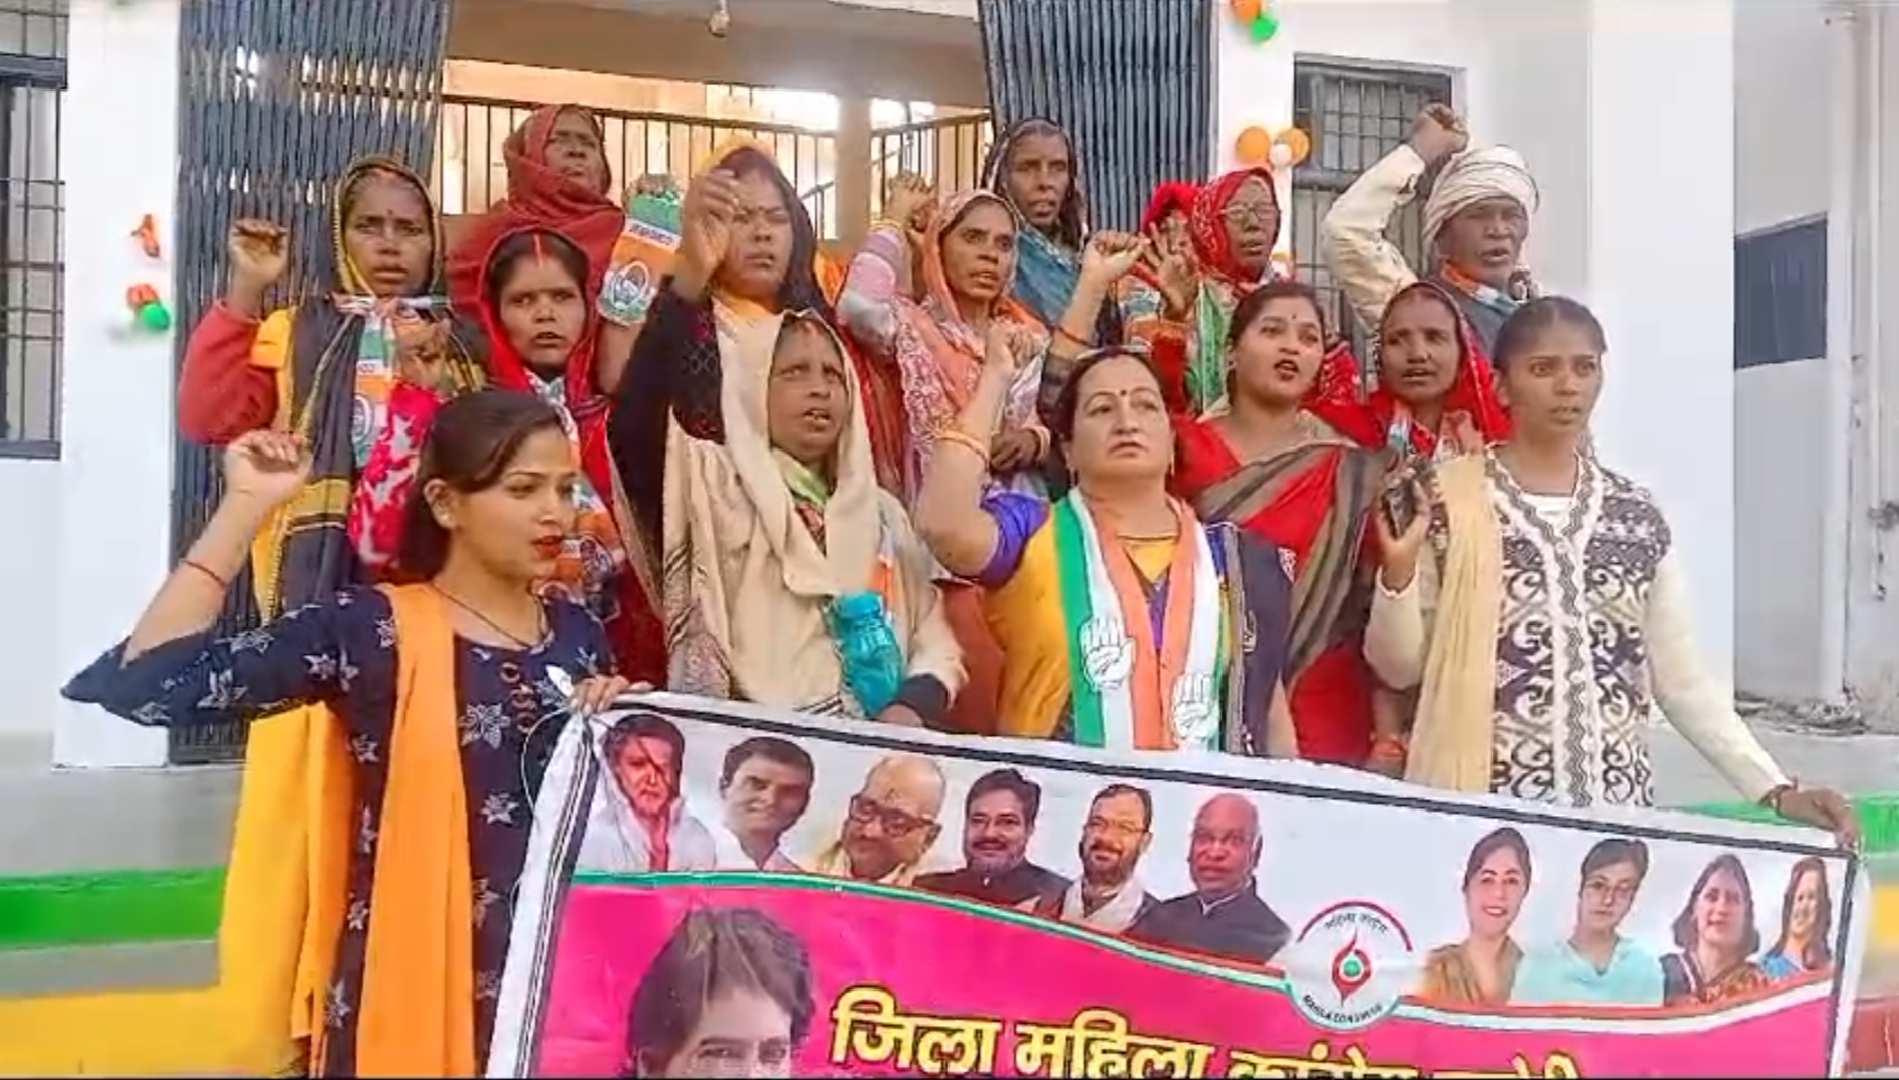 सोनभद्र कलेक्ट्रेट पर महिला कांग्रेस ने मुख्यमंत्री सामूहिक विवाह योजना में हुए भ्रष्टाचार को लेकर प्रदर्शन किया